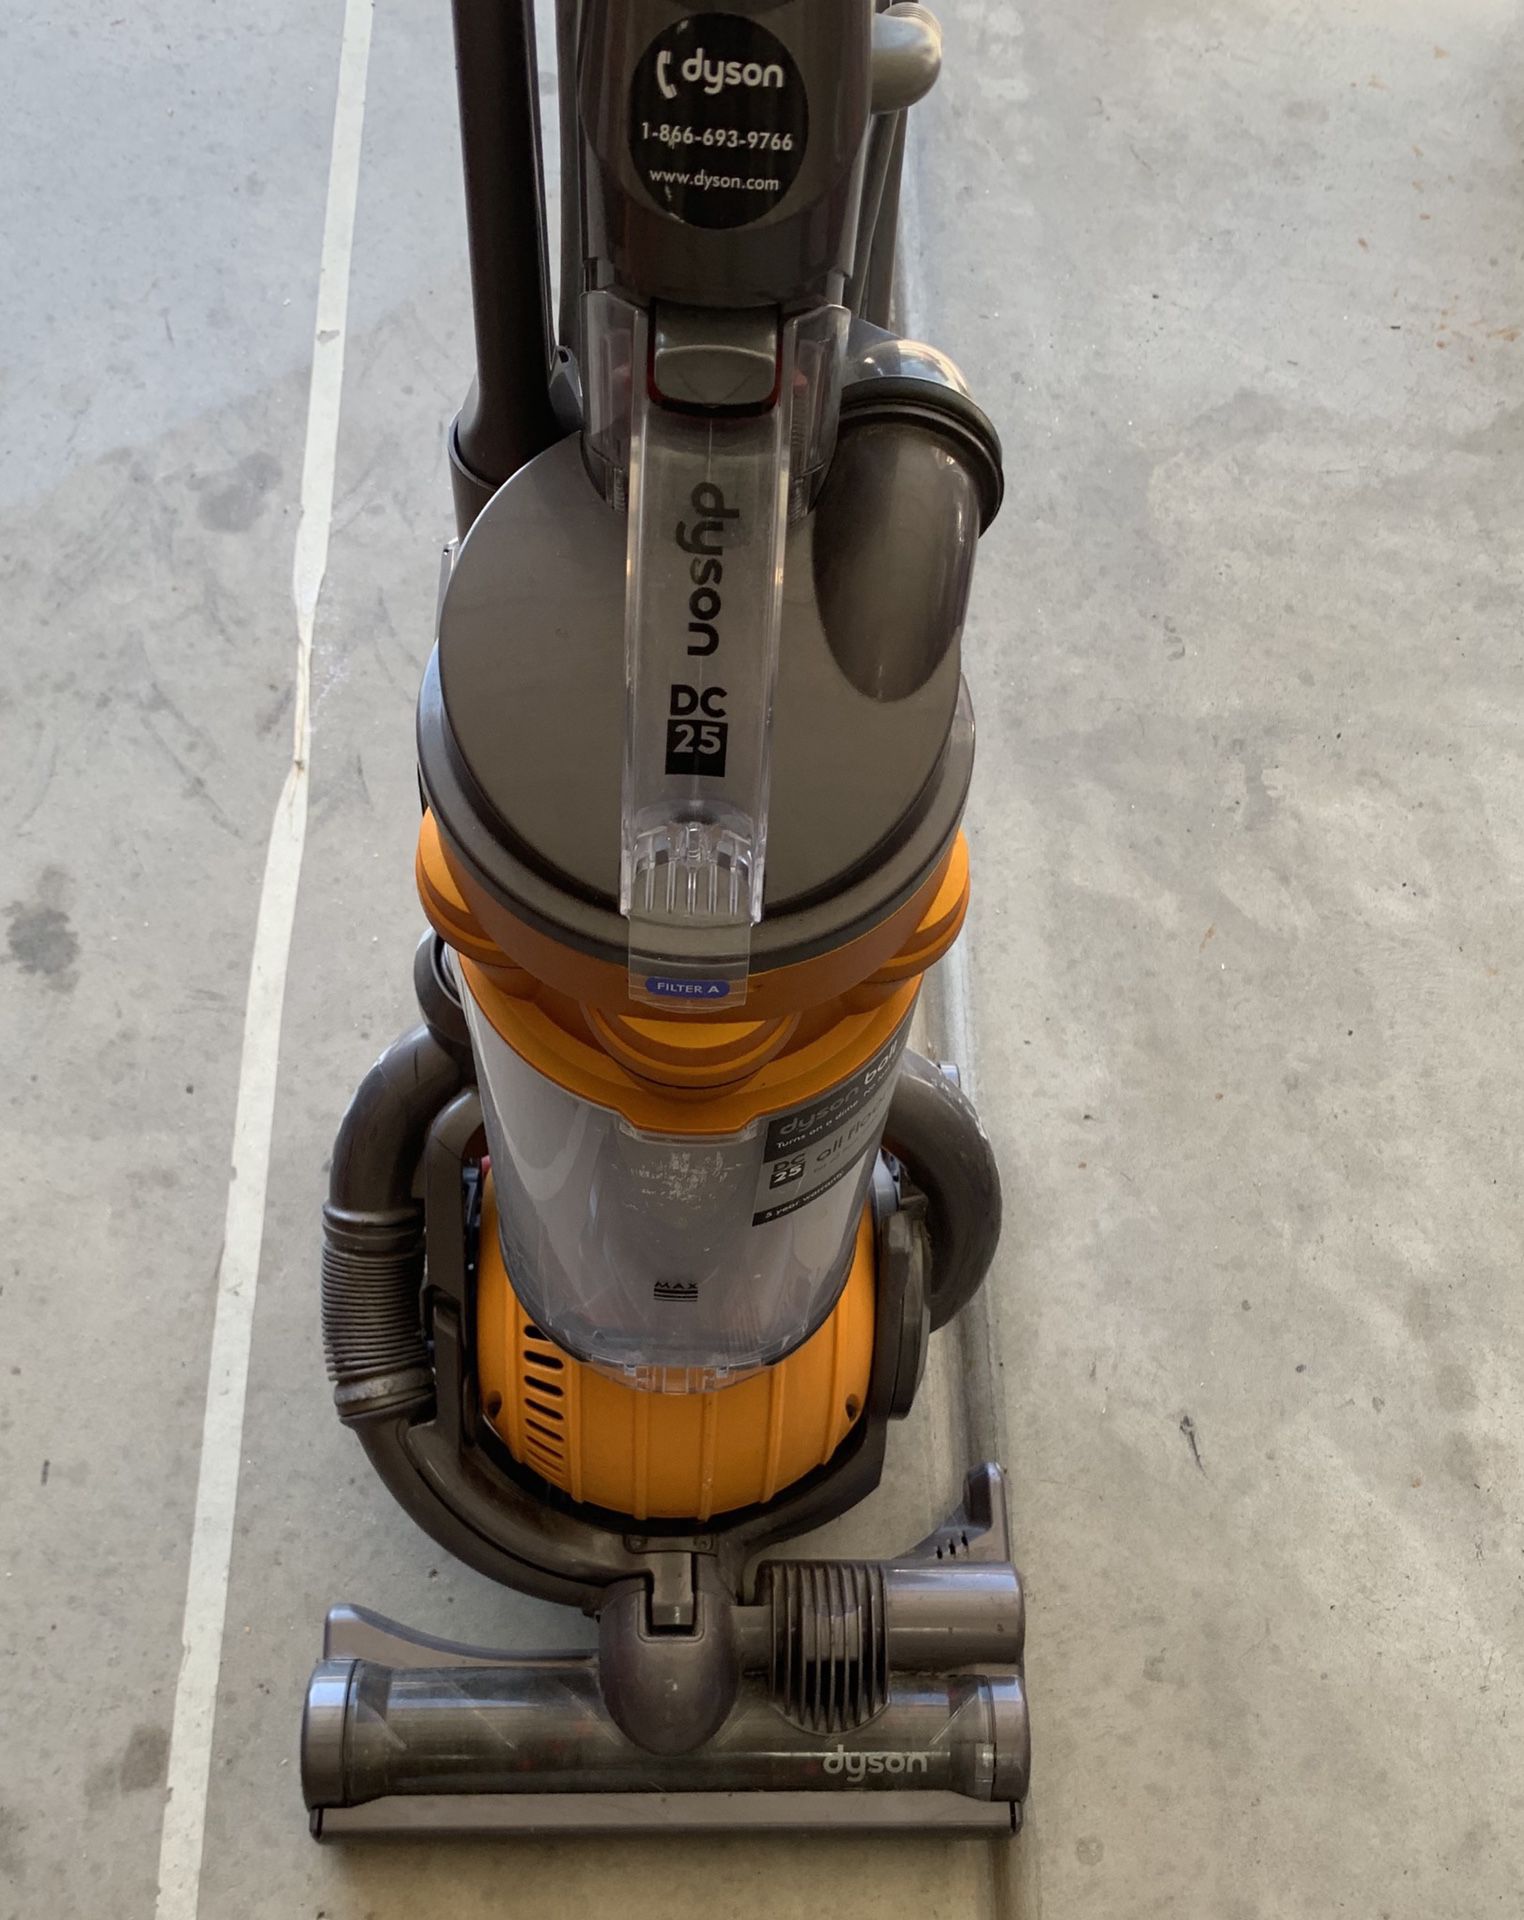 Dyson DC25 vacuum. Excellent condition.